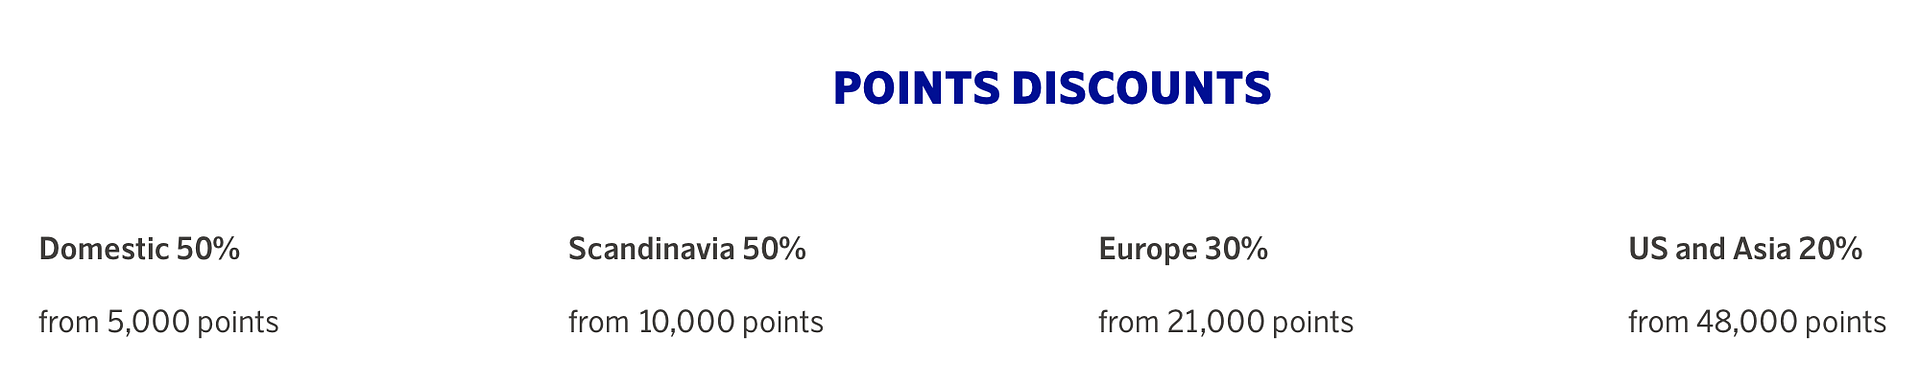 SAS EuroBonus points discount